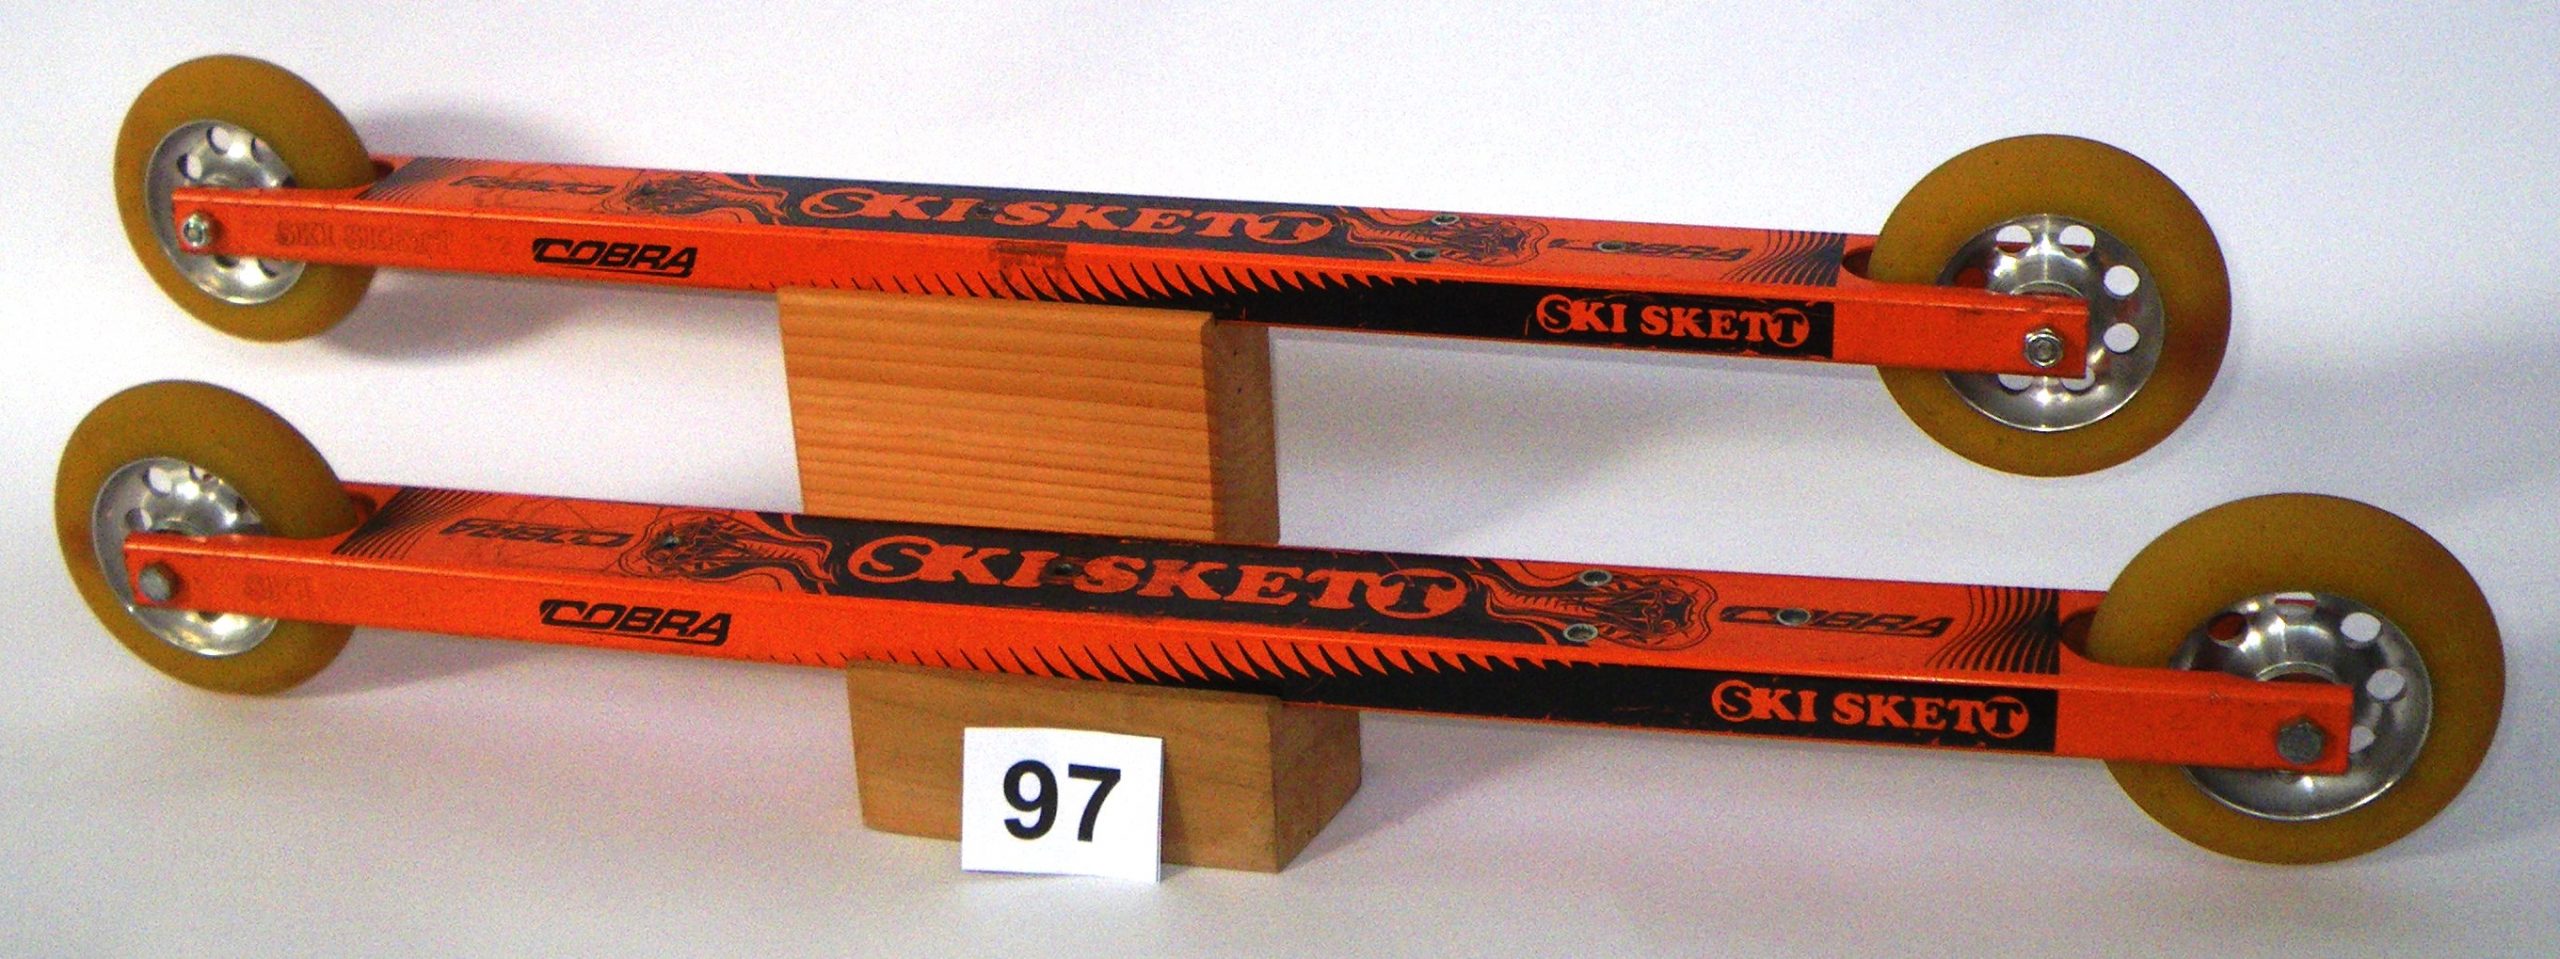 Roller Ski e Skiroll Skiskett prodotto Cobra 97